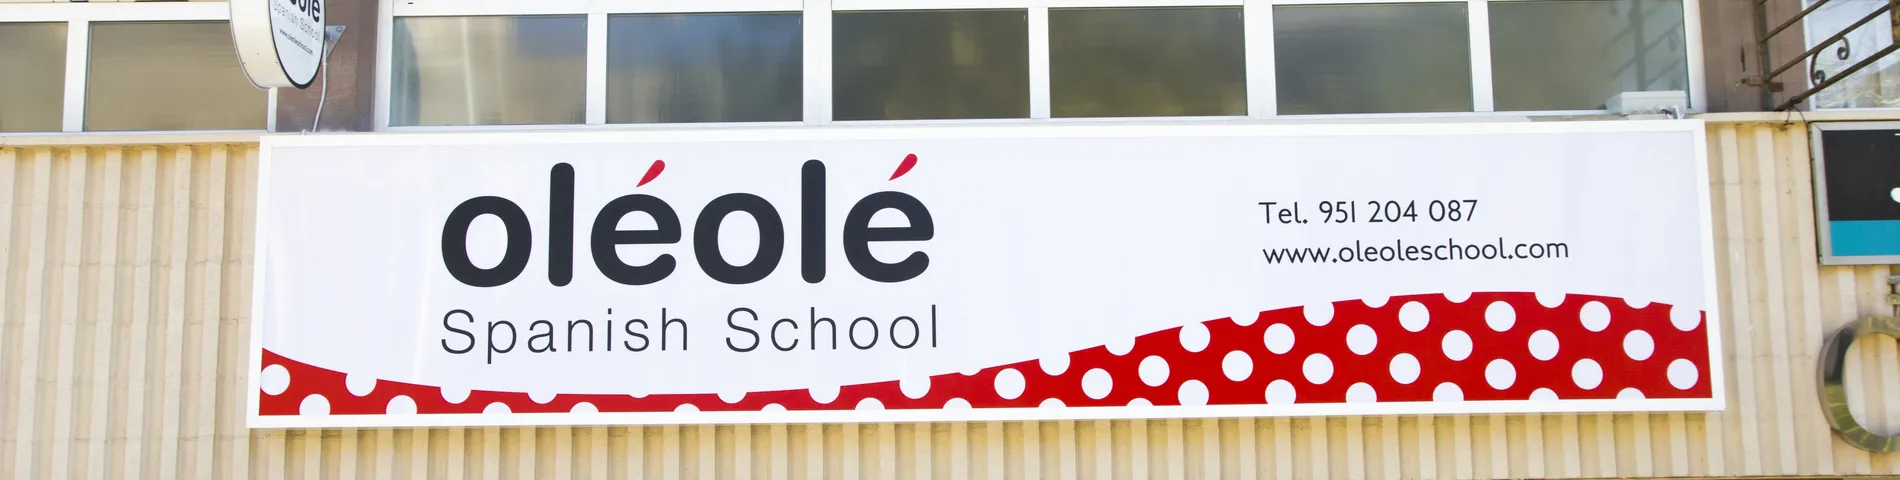 OléOlé Spanish School صورة 1